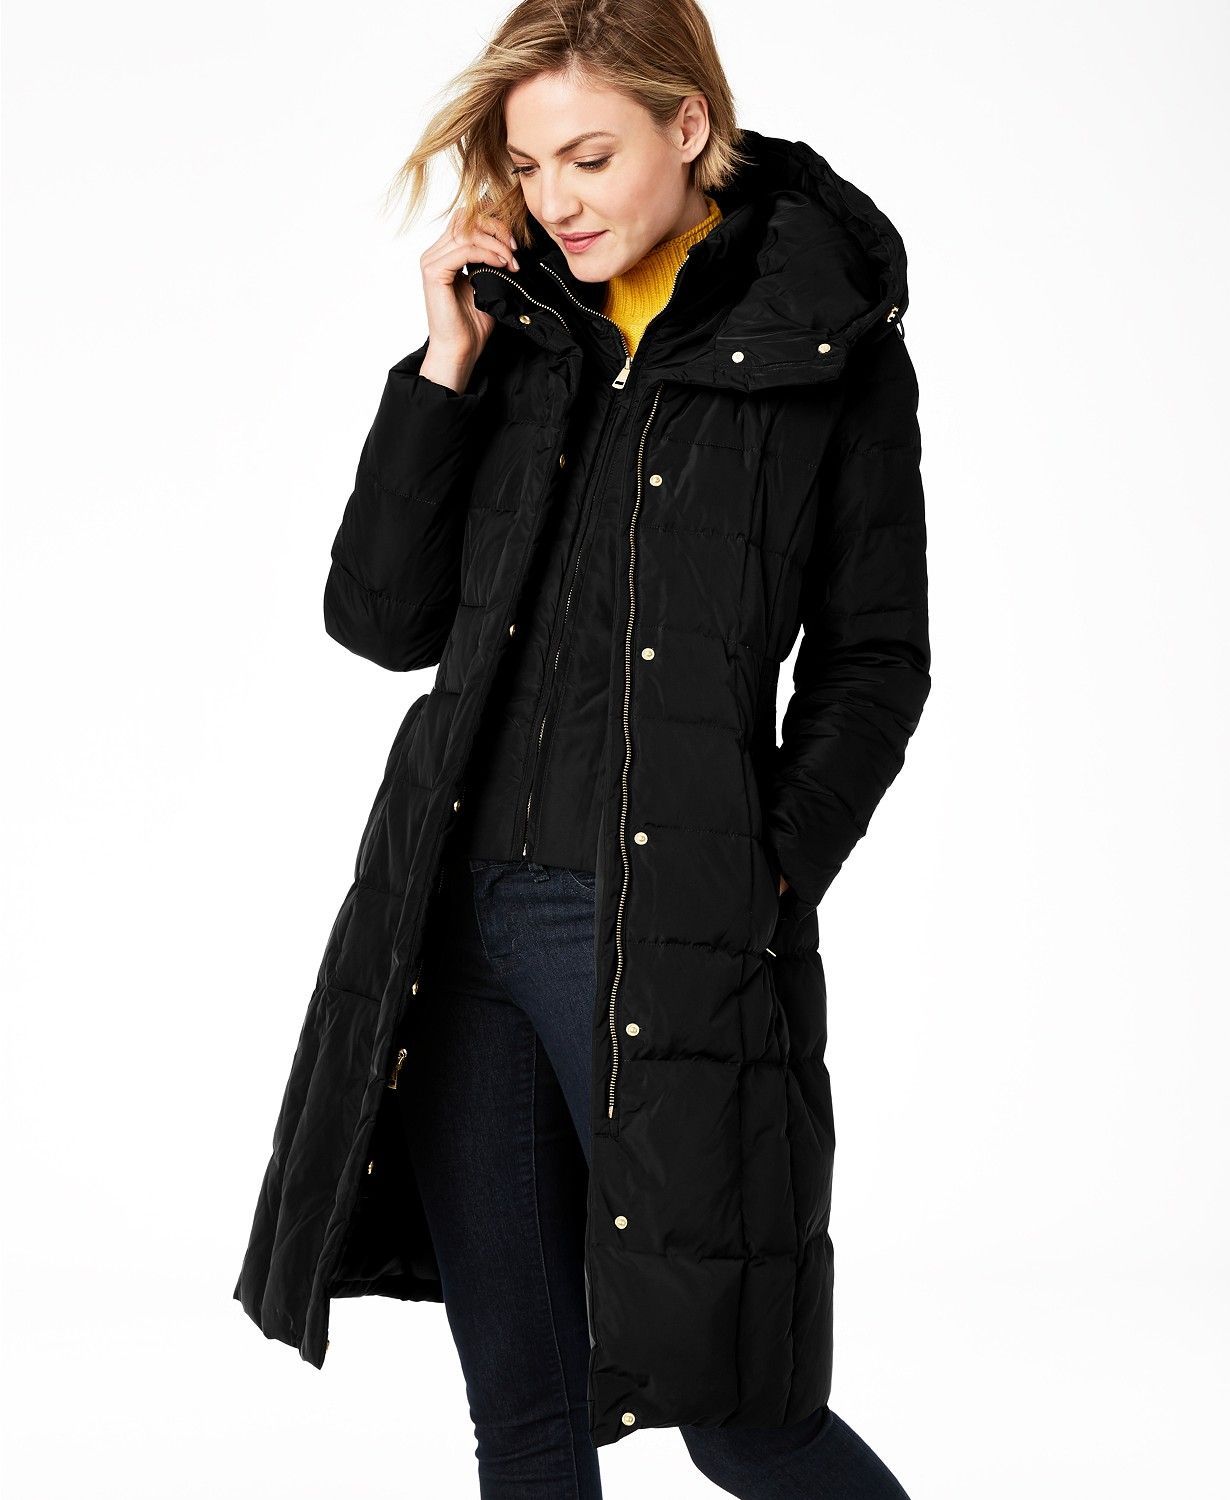 Women Winter Warm Wool Lapel Trench Parka Coat Long Jacket Overcoat Outwear Top